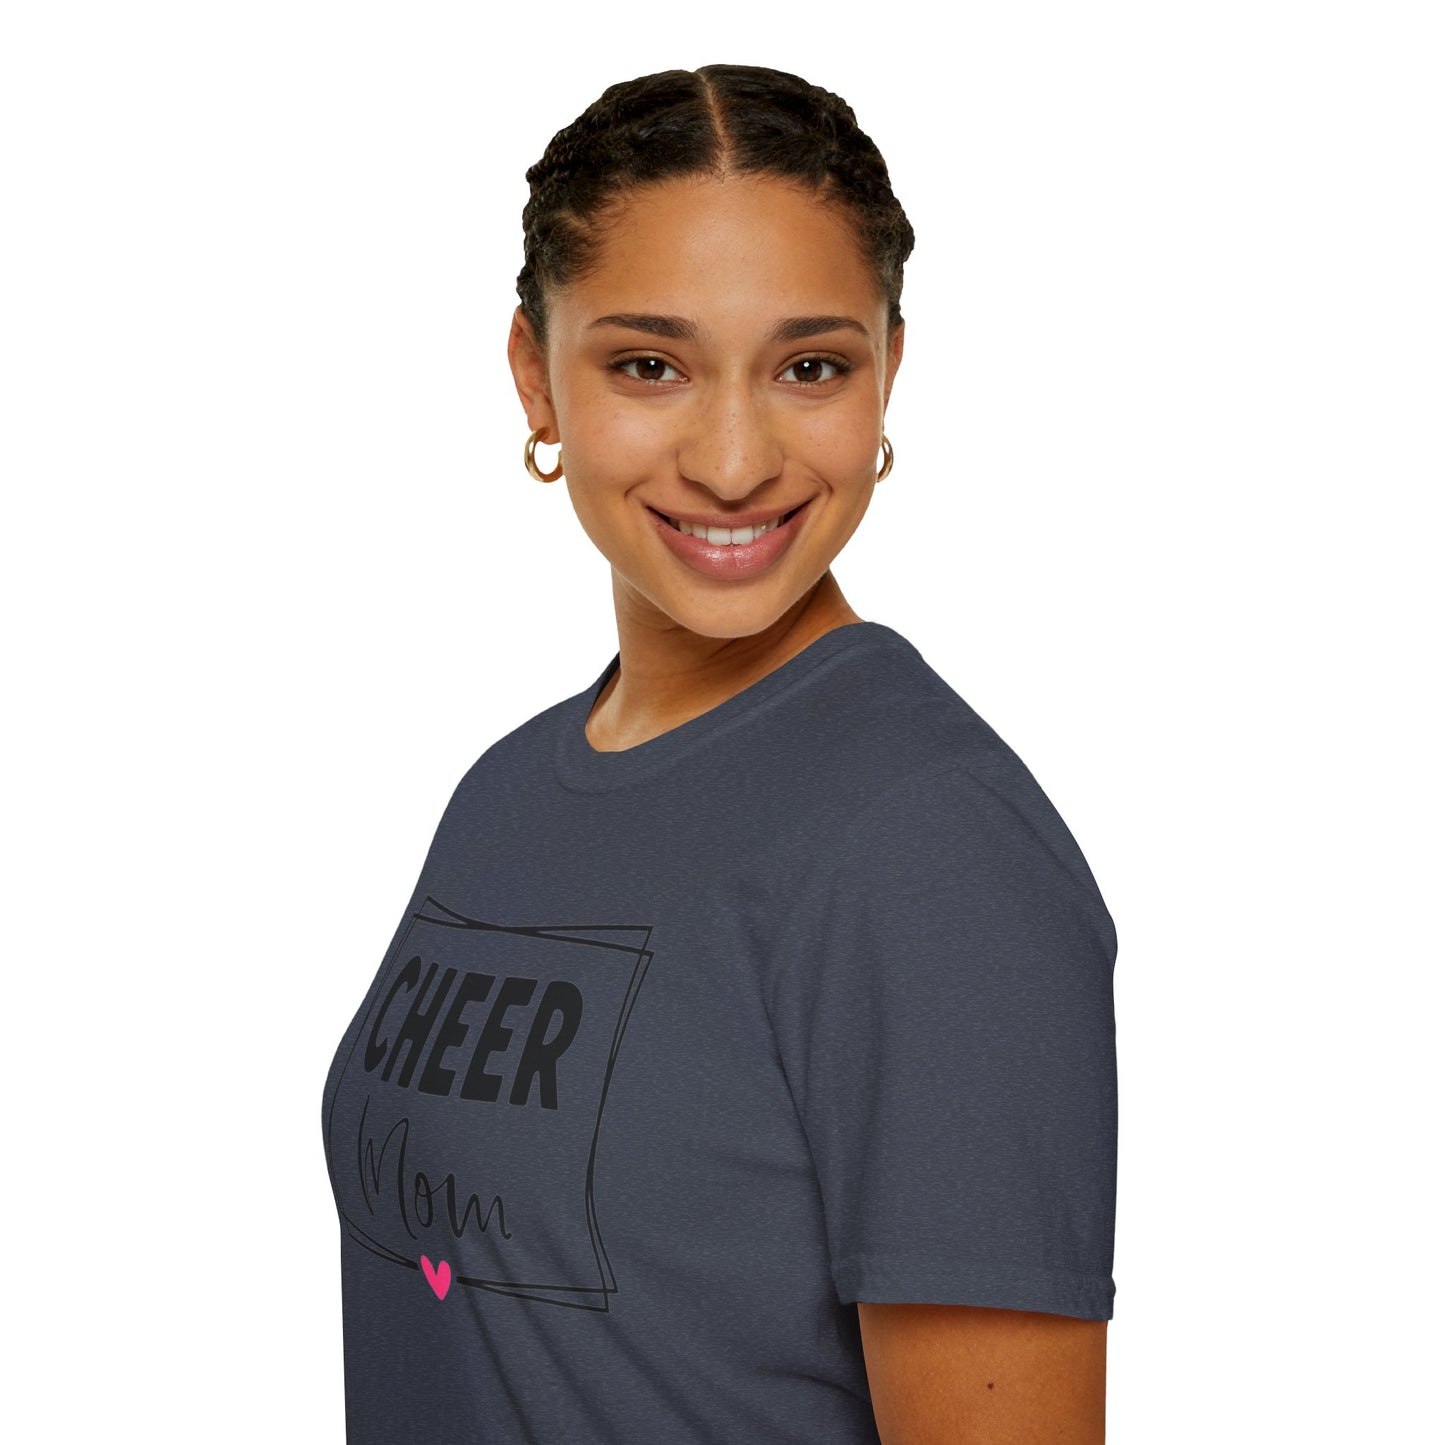 CHEER MOM | Unisex T-Shirt